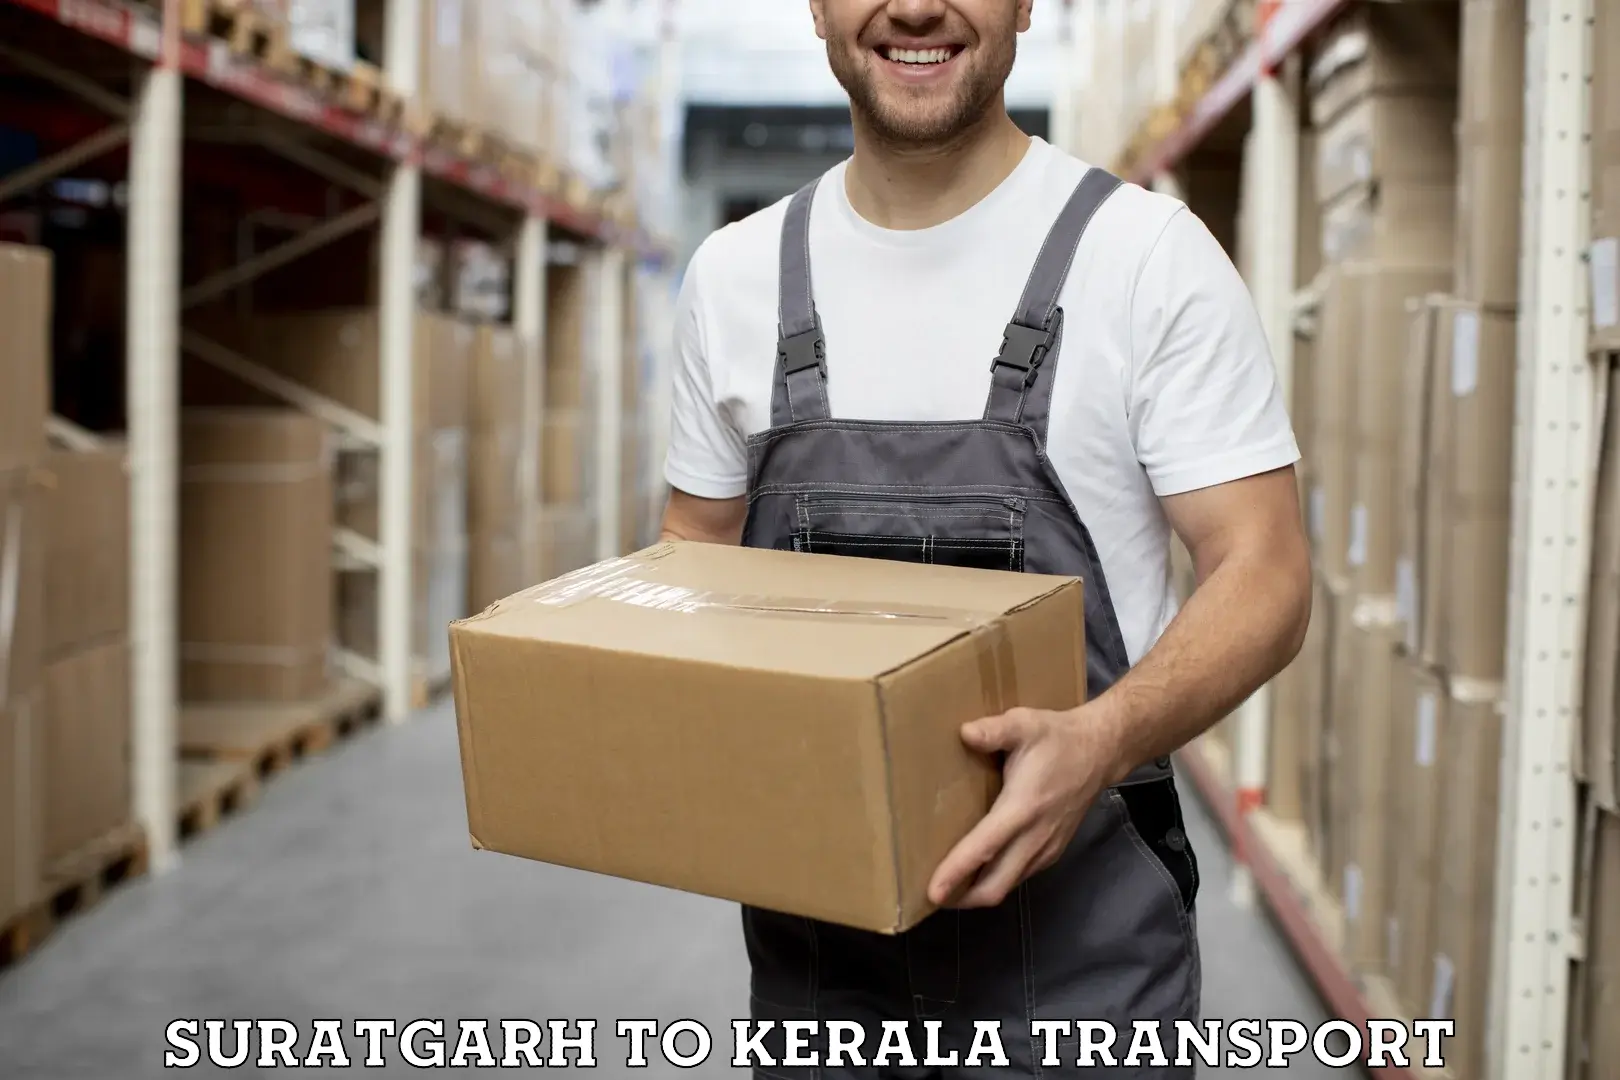 Delivery service Suratgarh to Kattappana